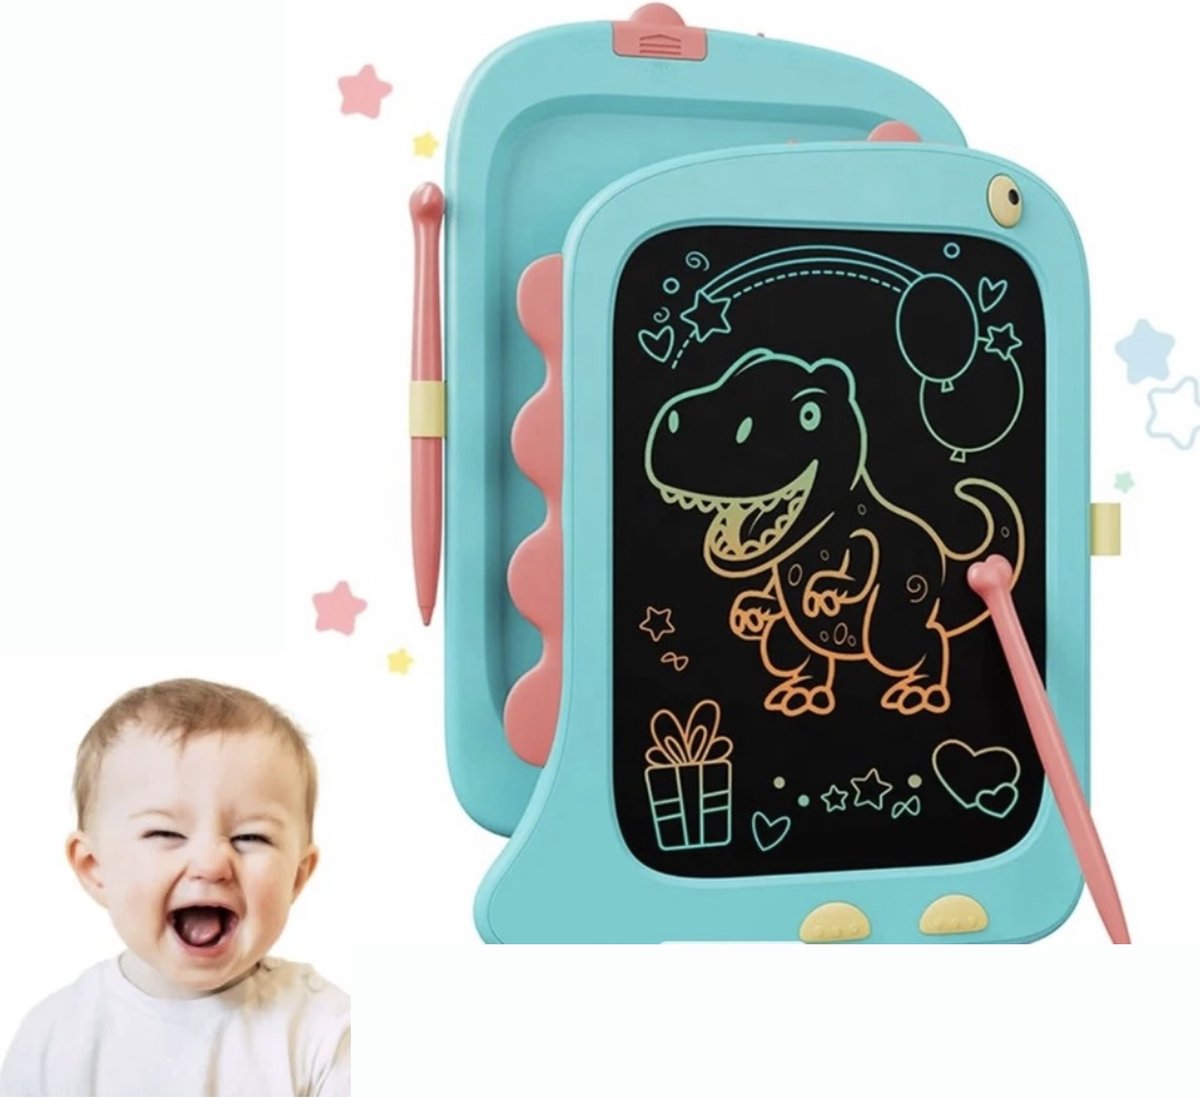 Magnetisch tekenbord - LCD tekentablet voor kinderen - digitaal tekenbord grafisch - draagbaar - kinderen 3-5 jaar - kinderen 5-8 jaar - speelgoed - leren tekenen - educatief voor kids - 8.5 inch - cadeau - kadootjes - millieuvriendelijk - blauw